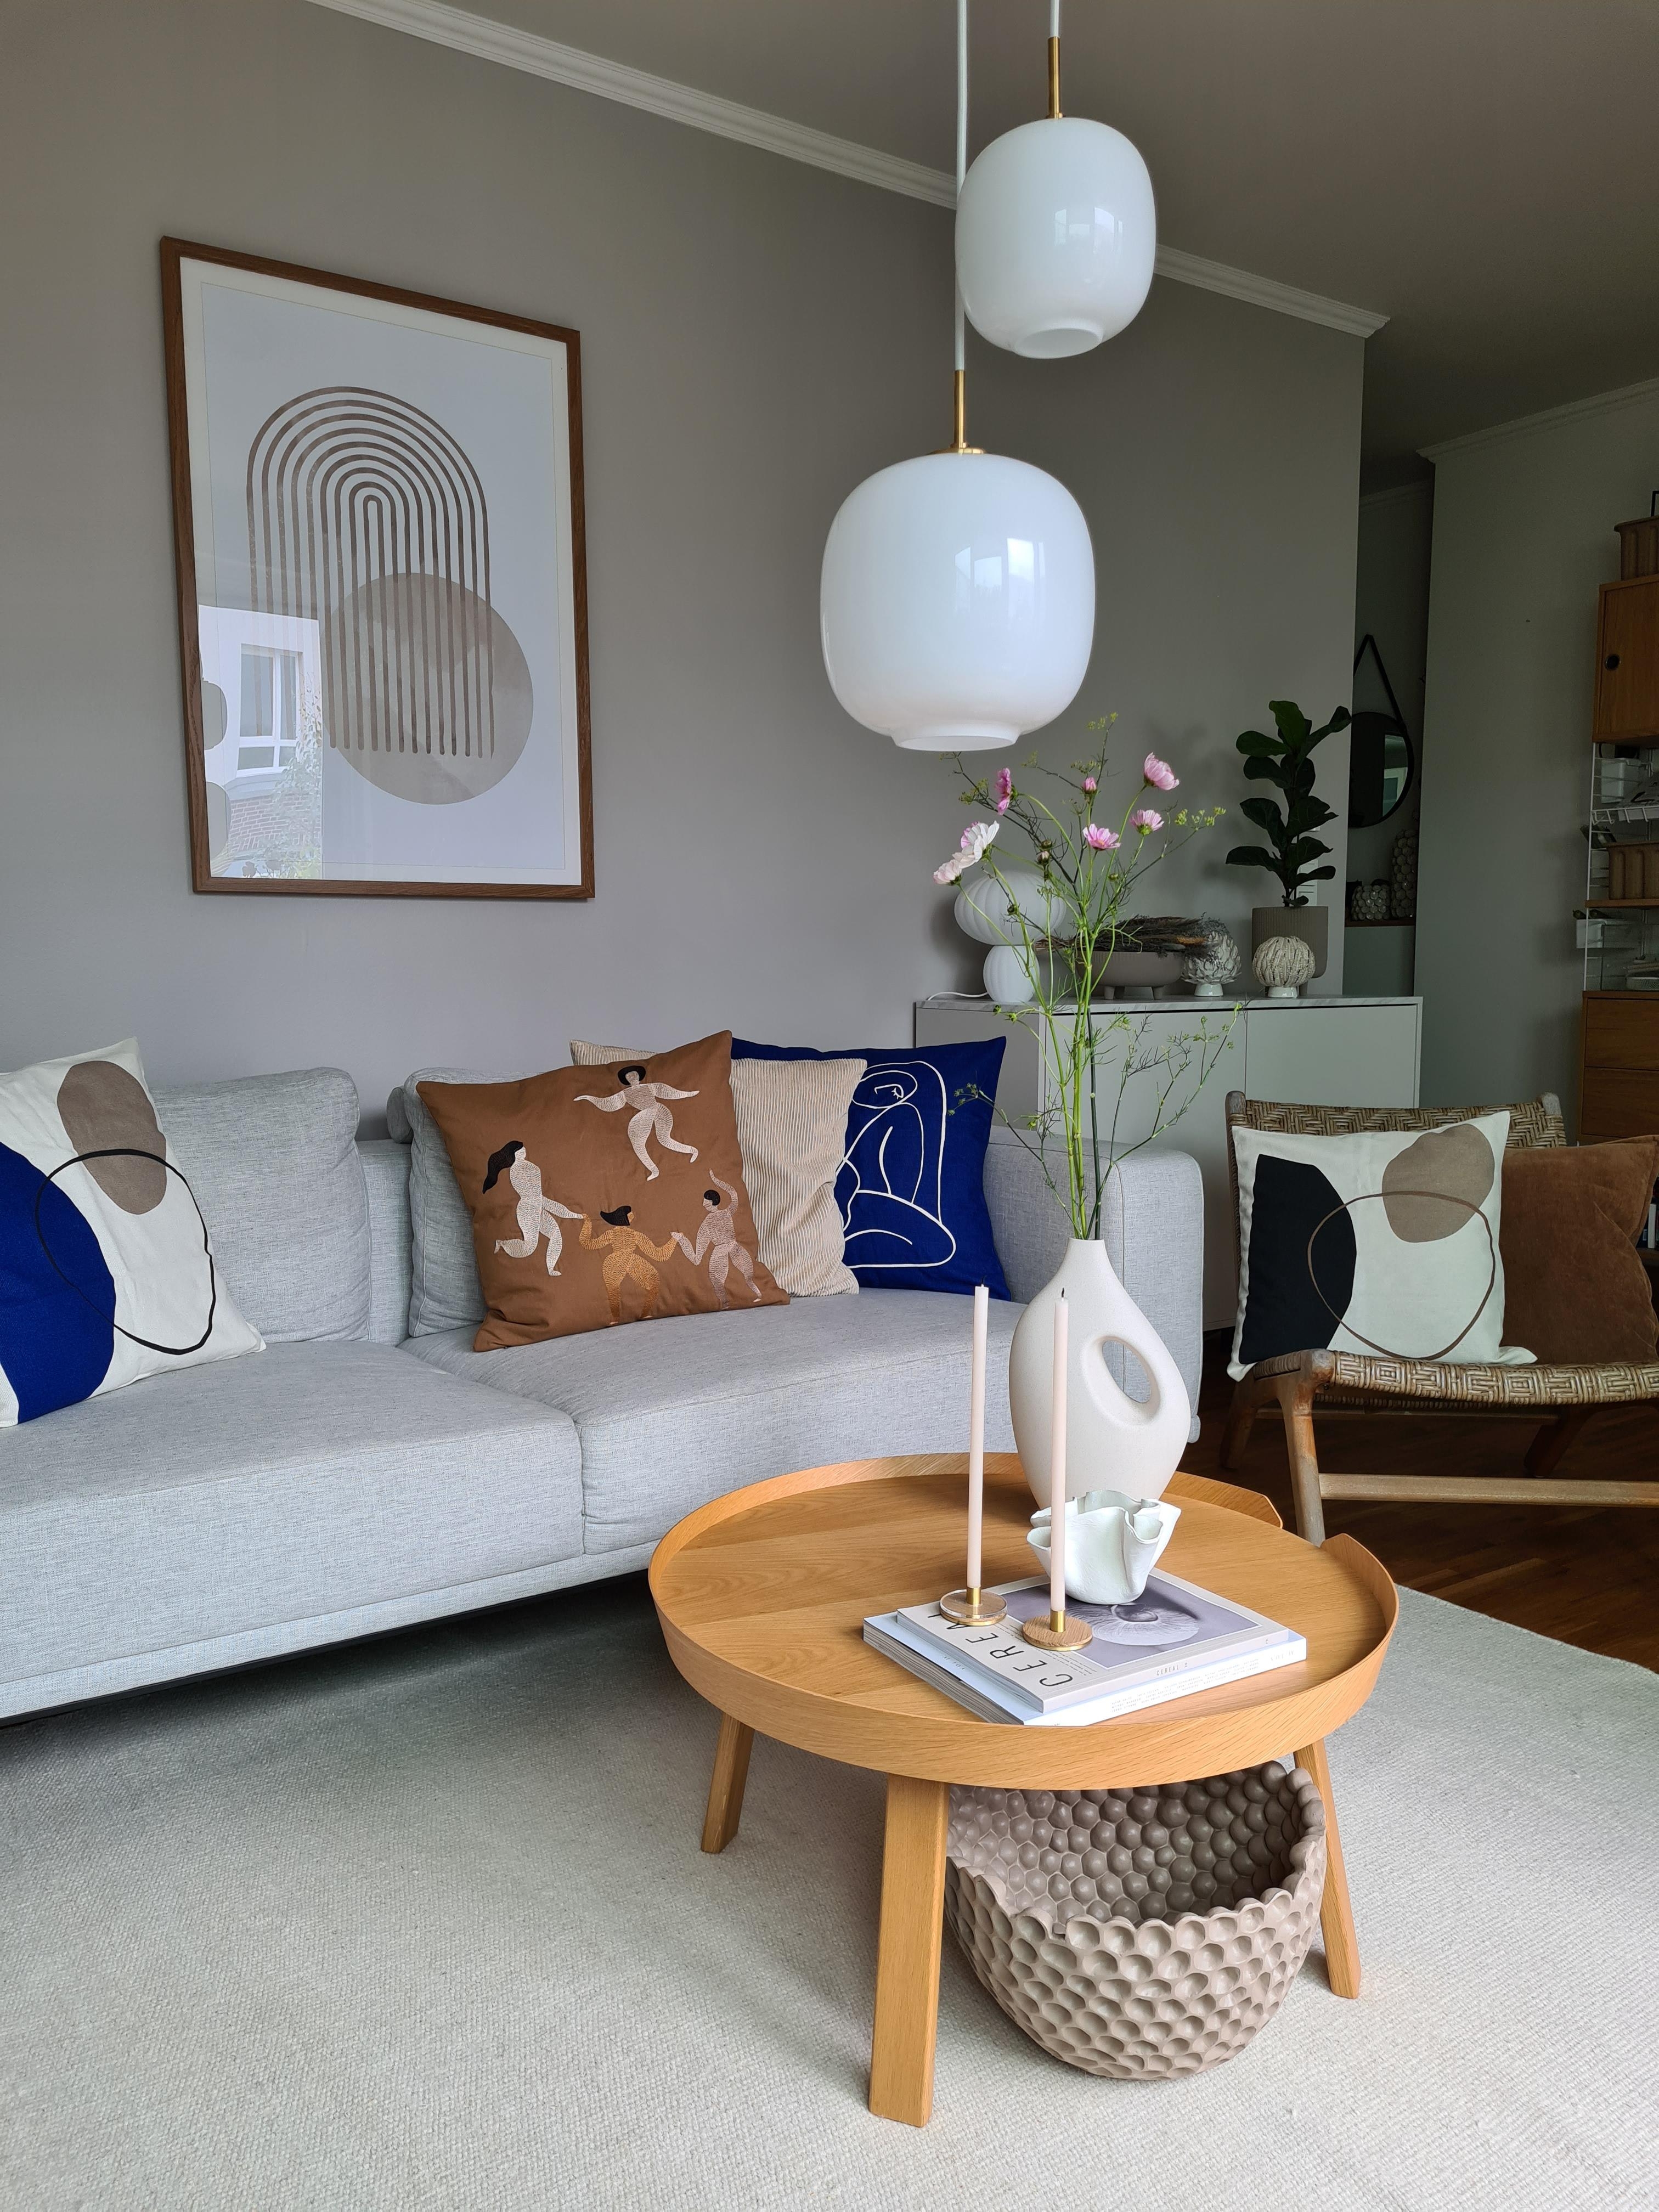 Neue Farben im Wohnzimmer

#livingroom #wohnzimmer #couchstyle #myhome 